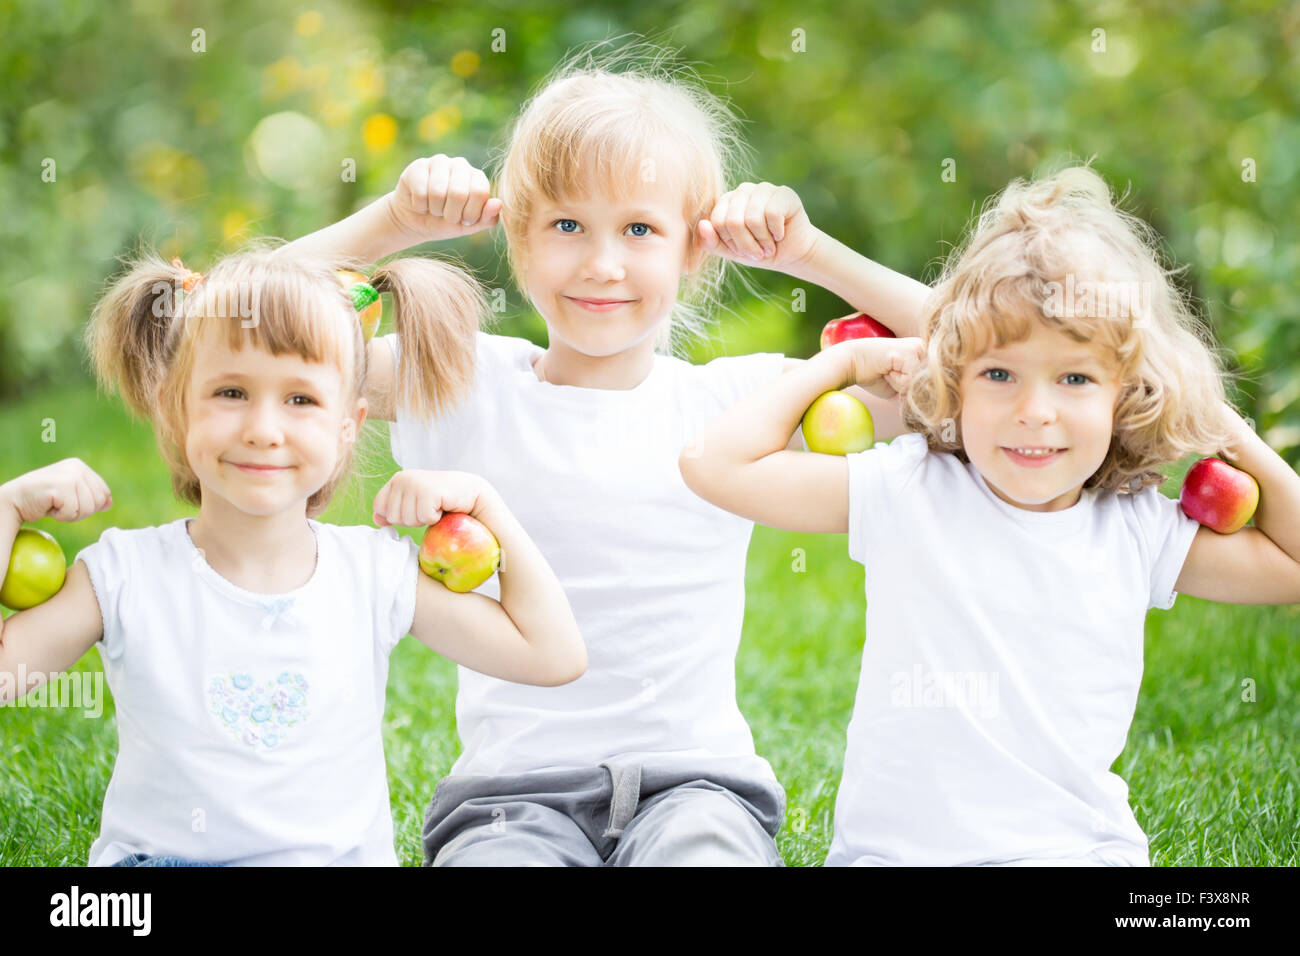 Glückliche Kinder mit Äpfeln Stockfoto